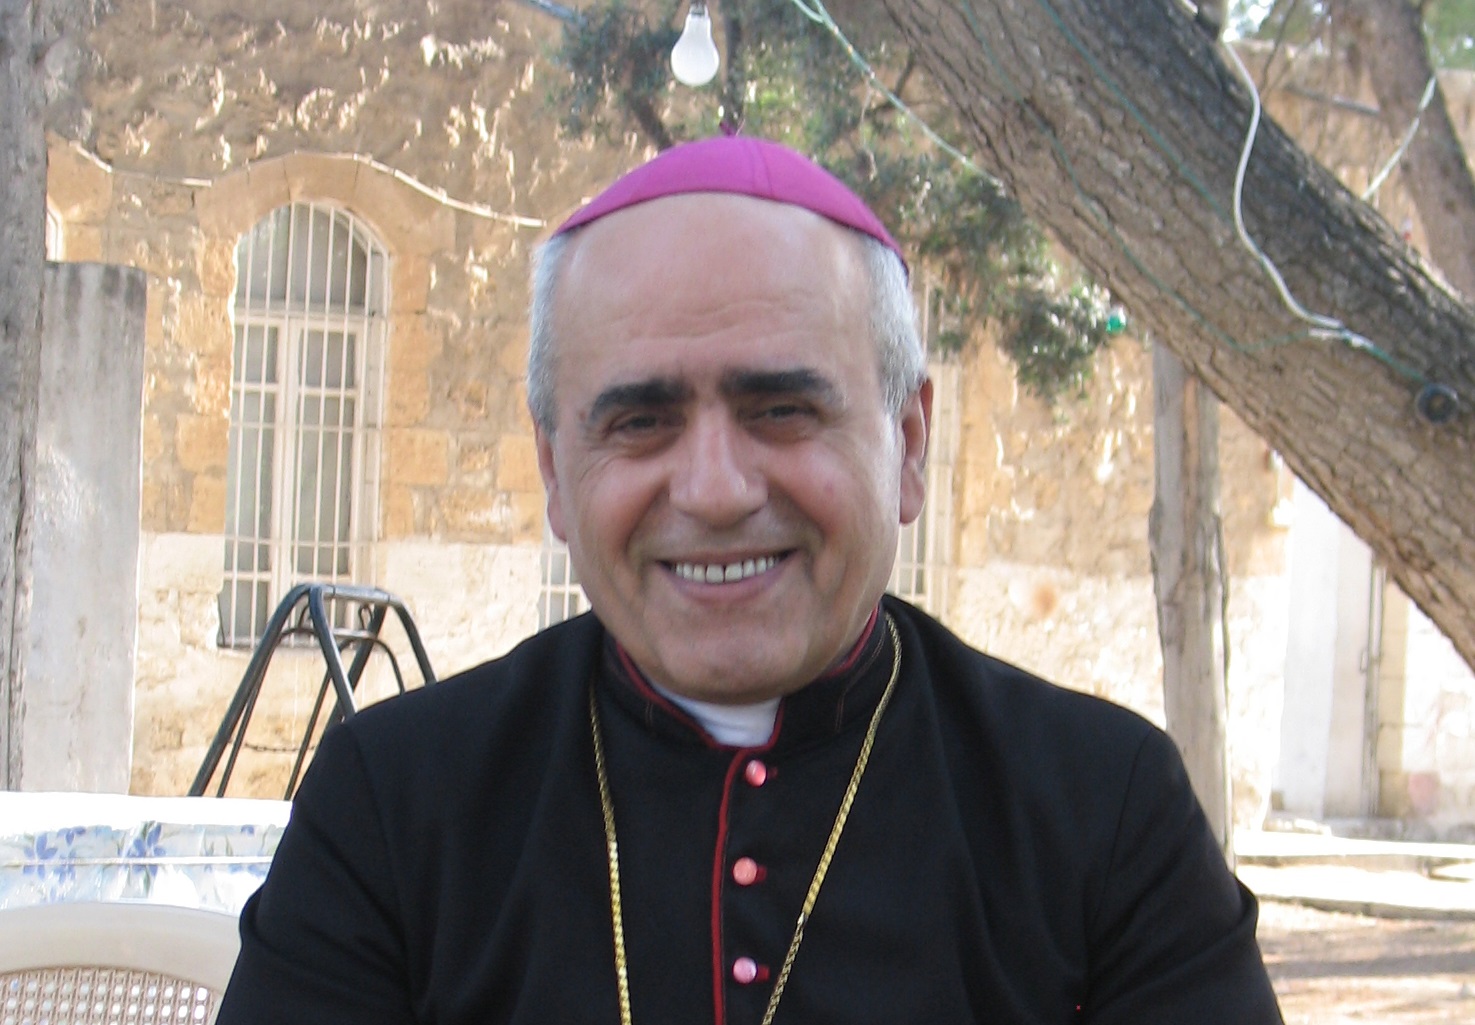 Arzobispo sirio acusa a kurdos de discriminación